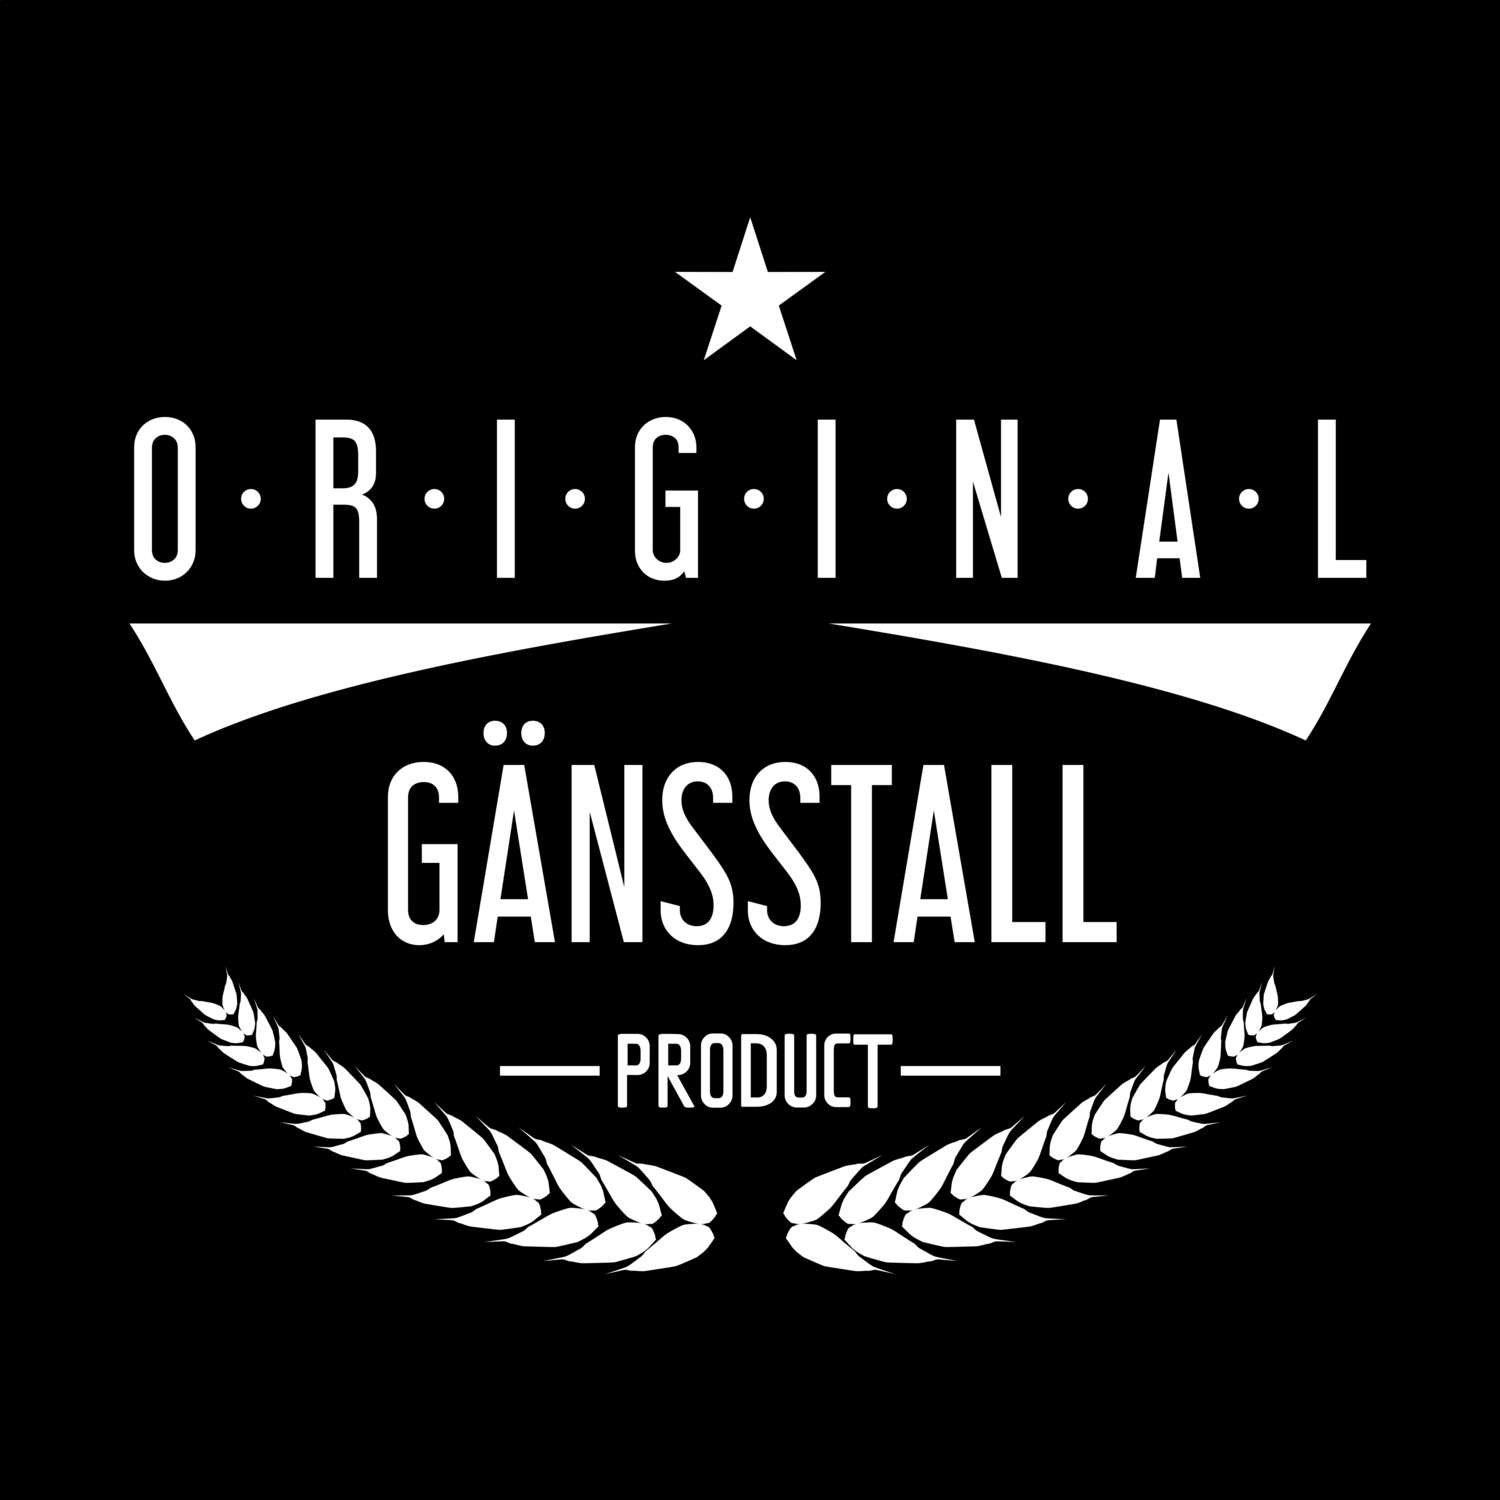 Gänsstall T-Shirt »Original Product«